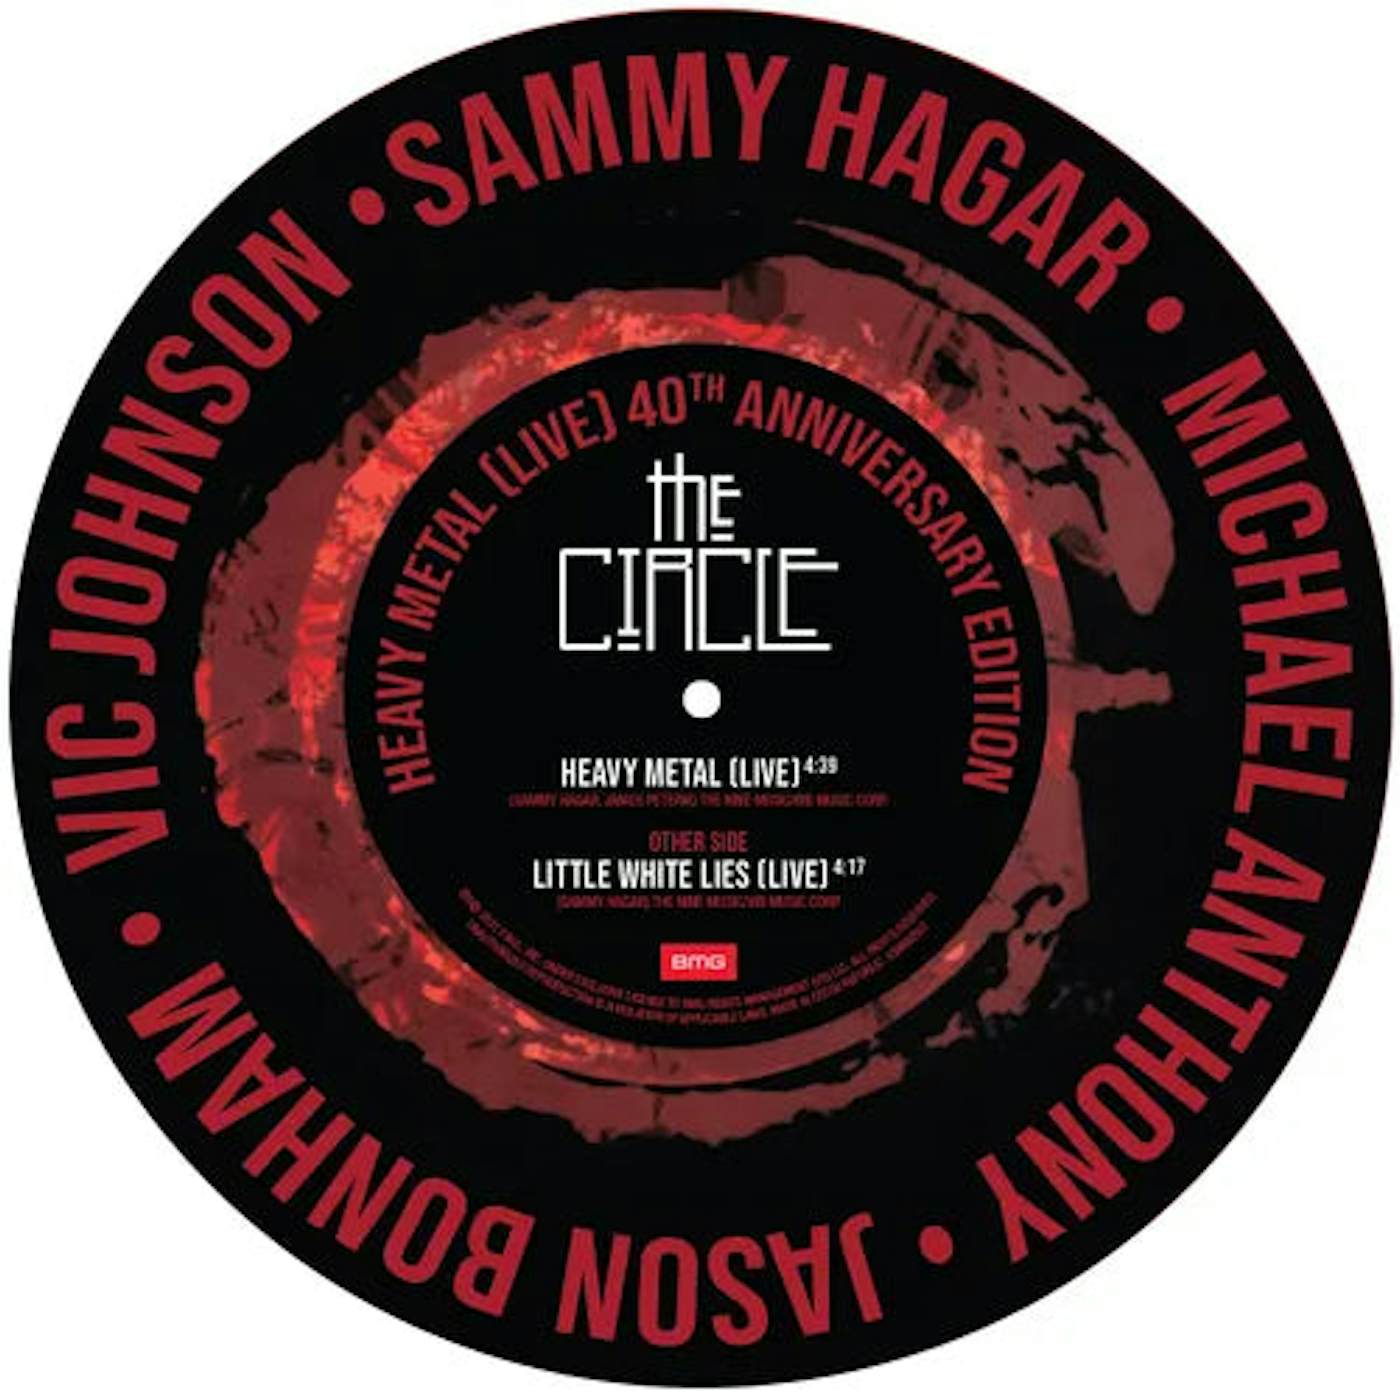 Sammy Hagar - Heavy Metal/Litle White Lie 12"